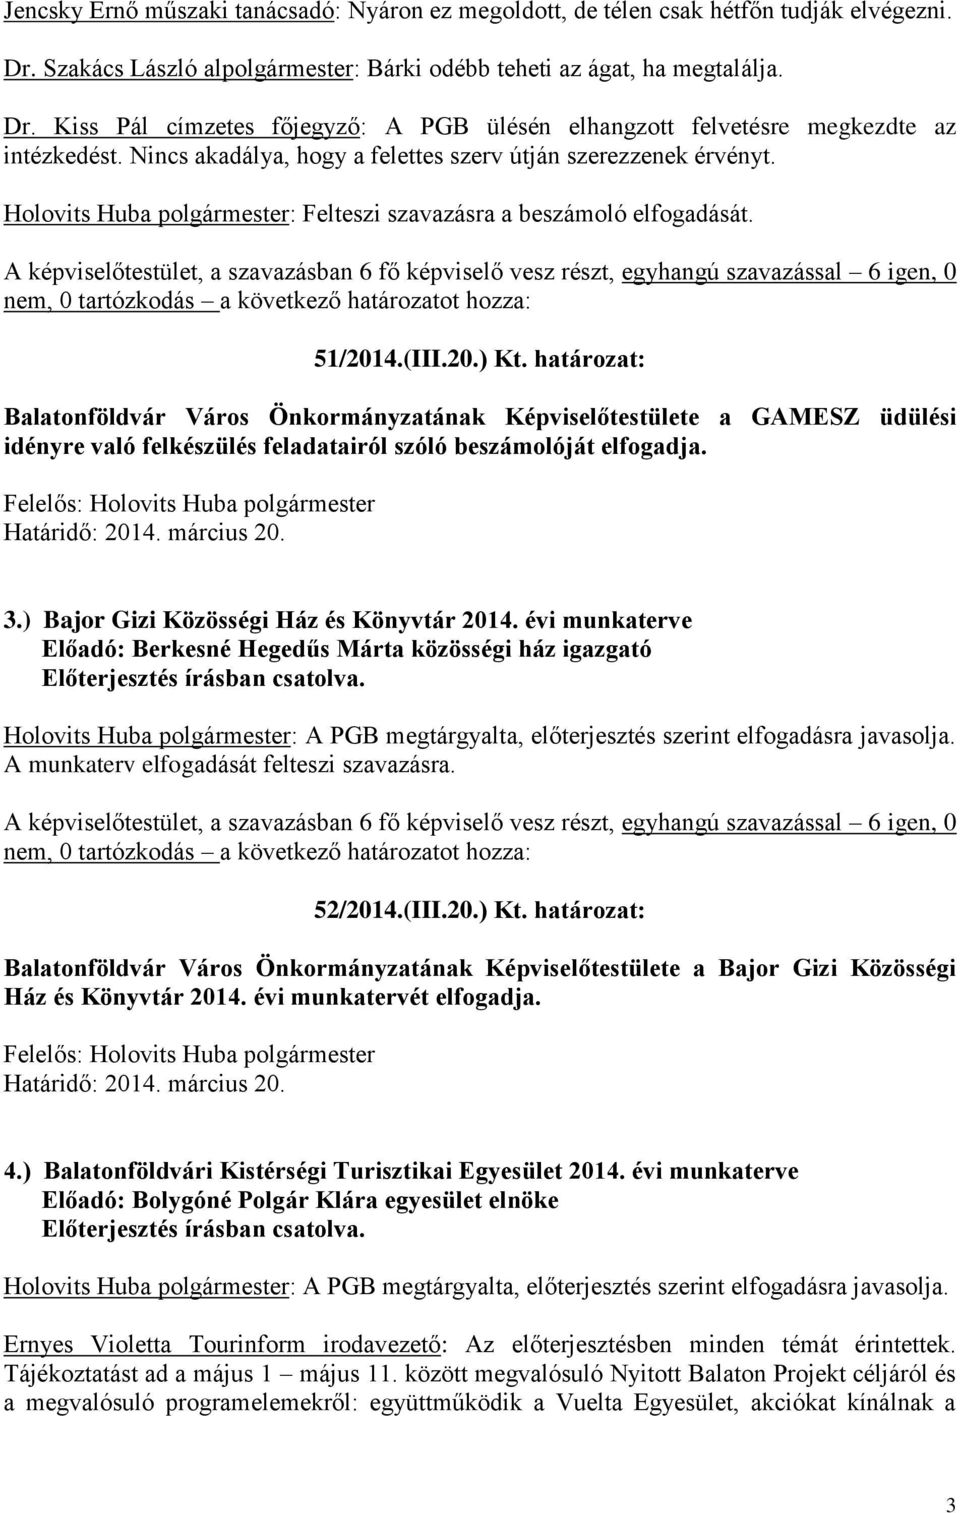 határozat: Balatonföldvár Város Önkormányzatának Képviselőtestülete a GAMESZ üdülési idényre való felkészülés feladatairól szóló beszámolóját elfogadja. 3.) Bajor Gizi Közösségi Ház és Könyvtár 2014.